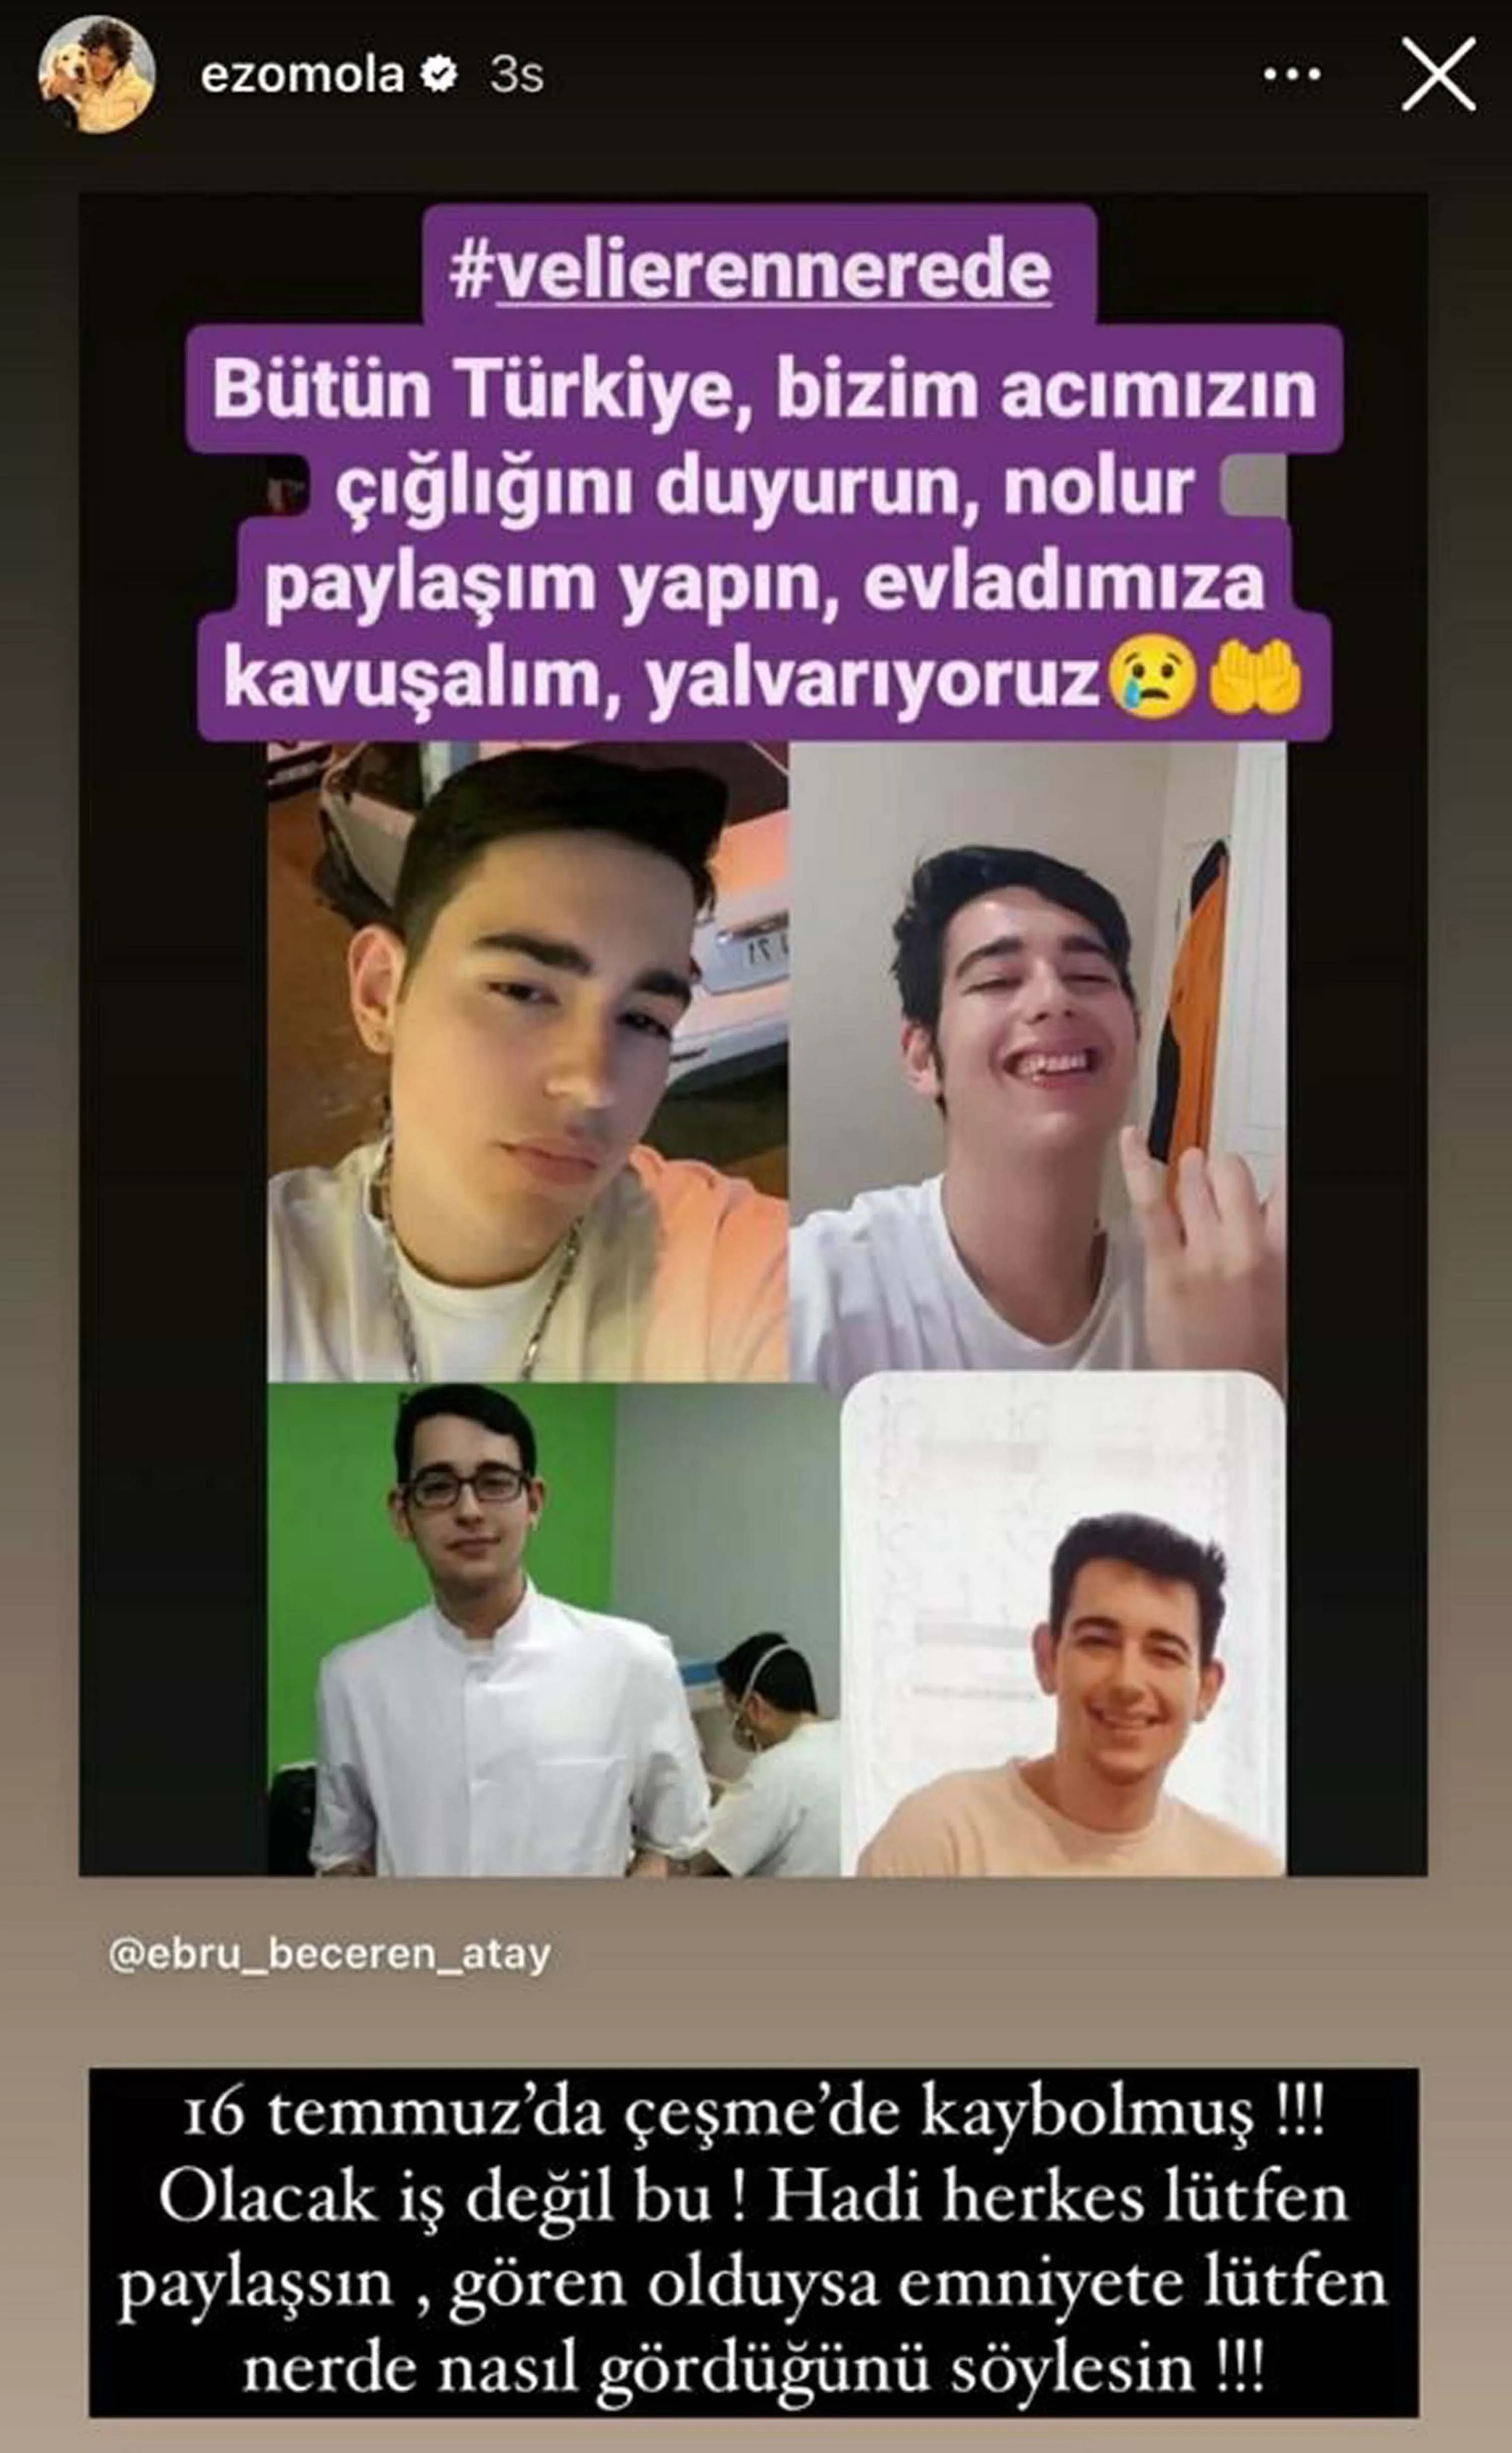 İzmir'de, 15 Temmuz'da arkadaşlarıyla Çeşme'ye giden ve bir daha da haber alınamayan Veli Eren Atay’ın (19) bulunması için sanat dünyasından birçok isim sosyal medya hesaplarından paylaşımda bulundu